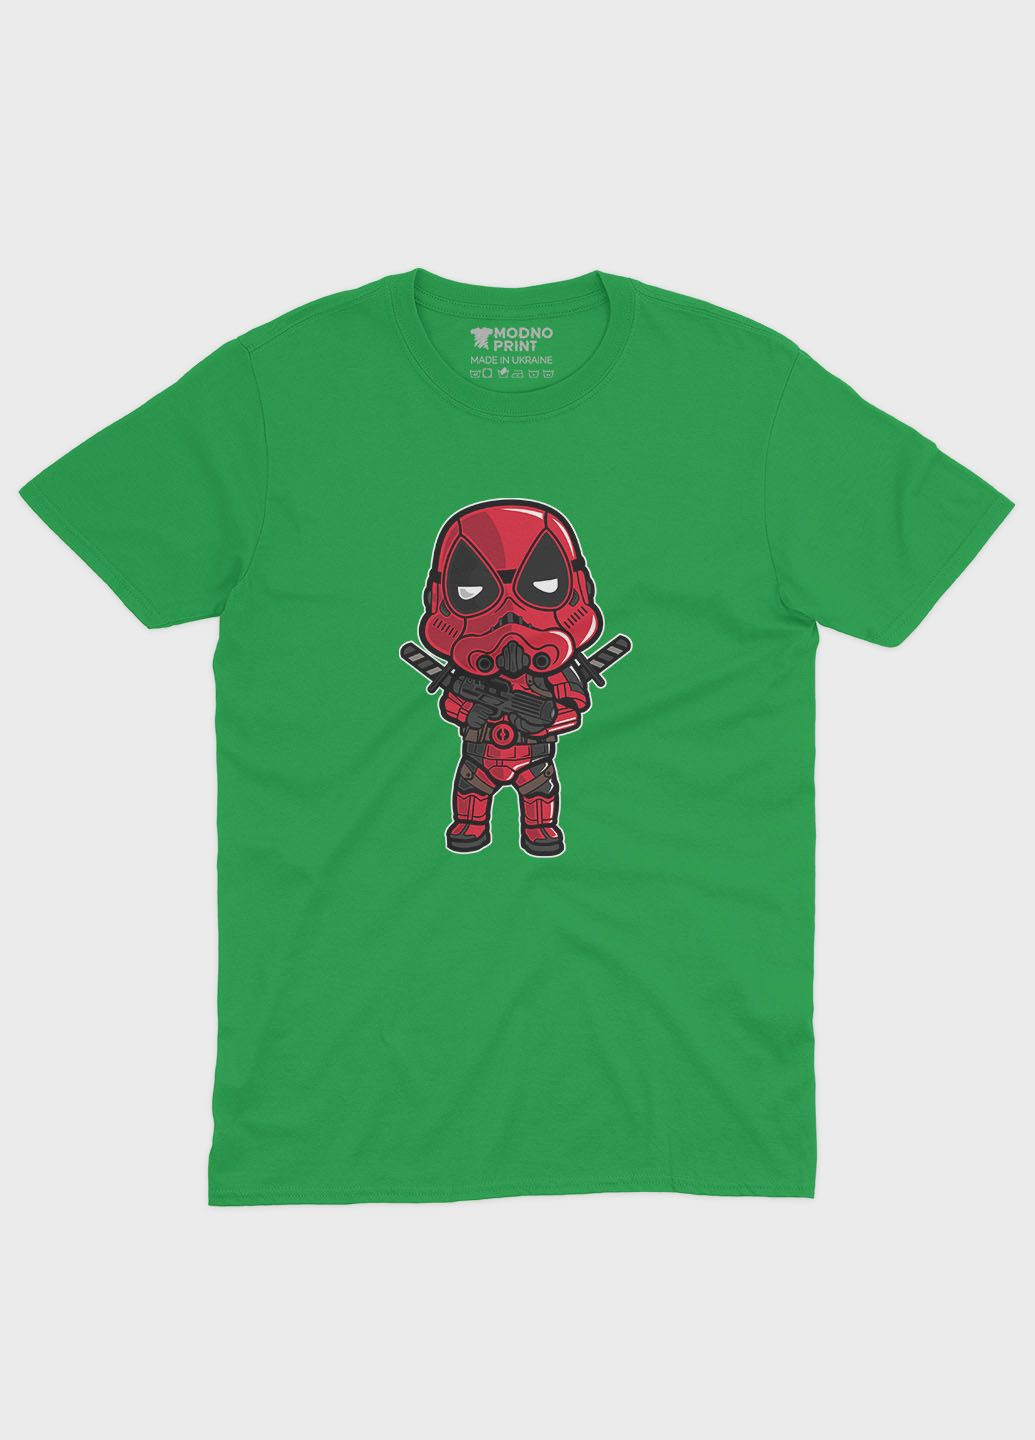 Зелена демісезонна футболка для хлопчика з принтом антигероя - дедпул (ts001-1-keg-006-015-017-b) Modno